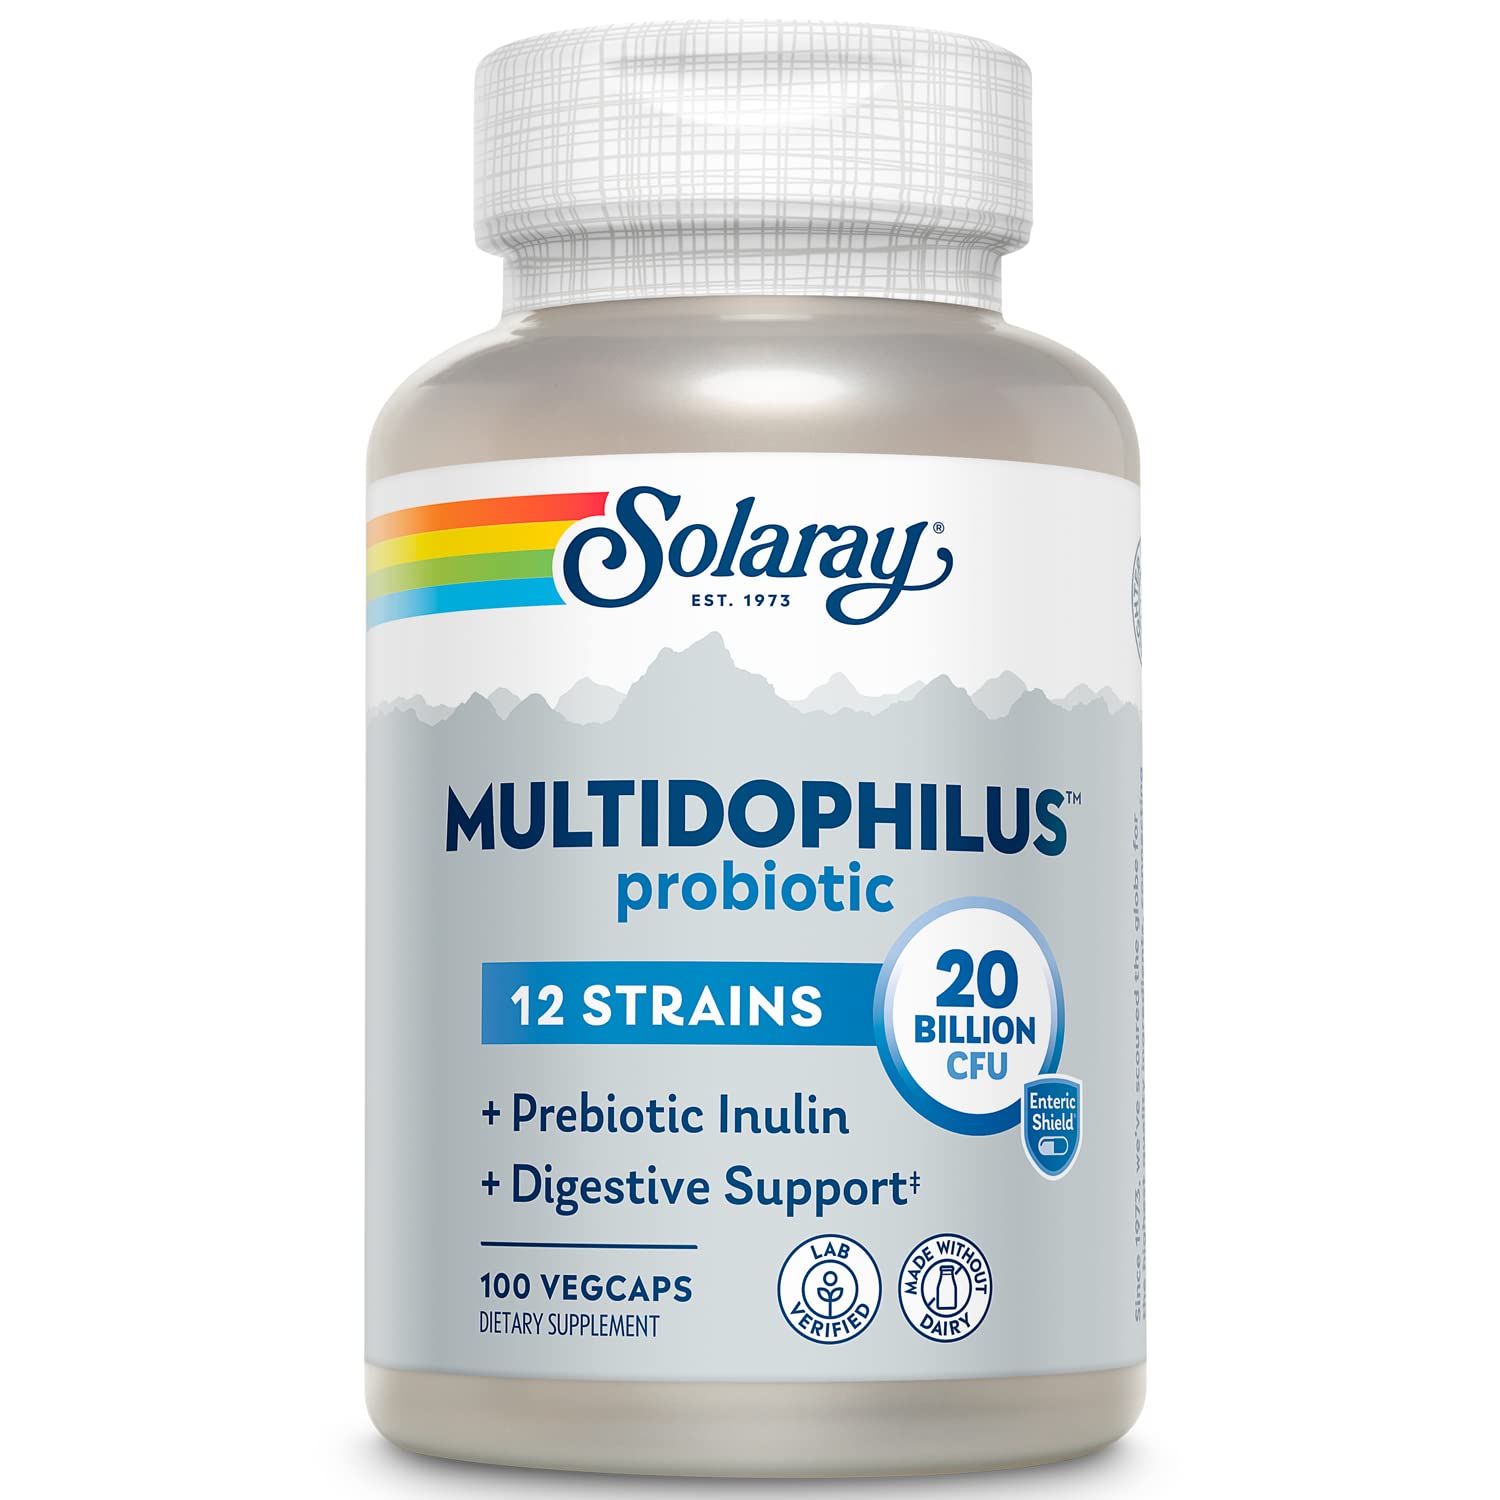 Solaray Multidophilus 12 Strain Probiotic 20 Billion CFU 100ct VegCap